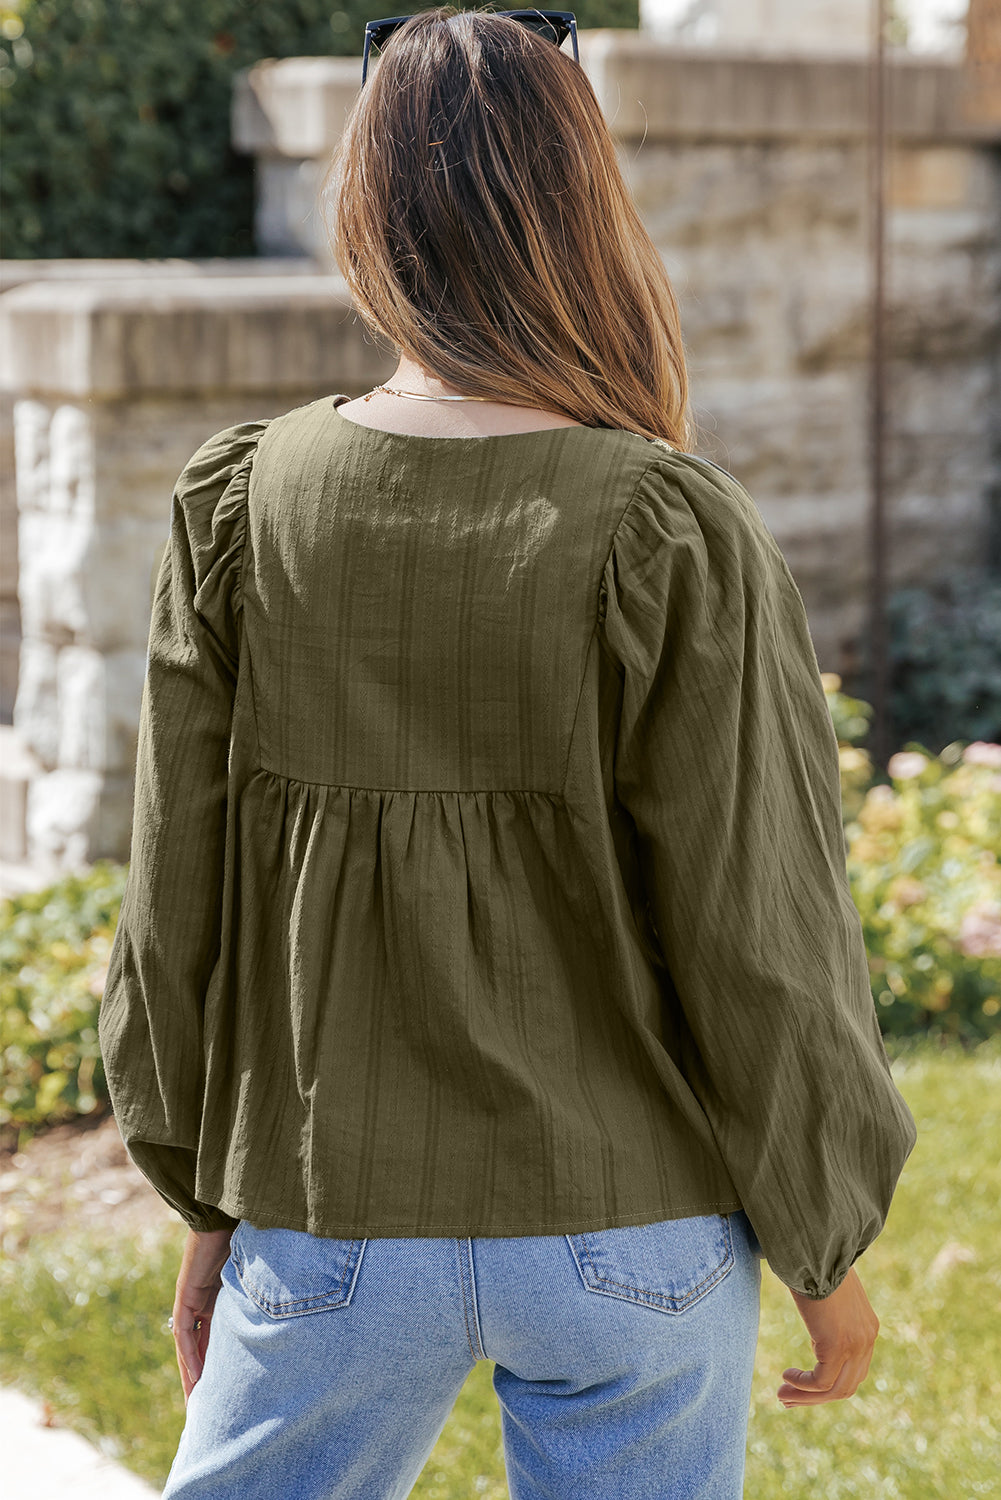 Grüne, bestickte, plissierte, lockere Bluse mit geteiltem Ausschnitt